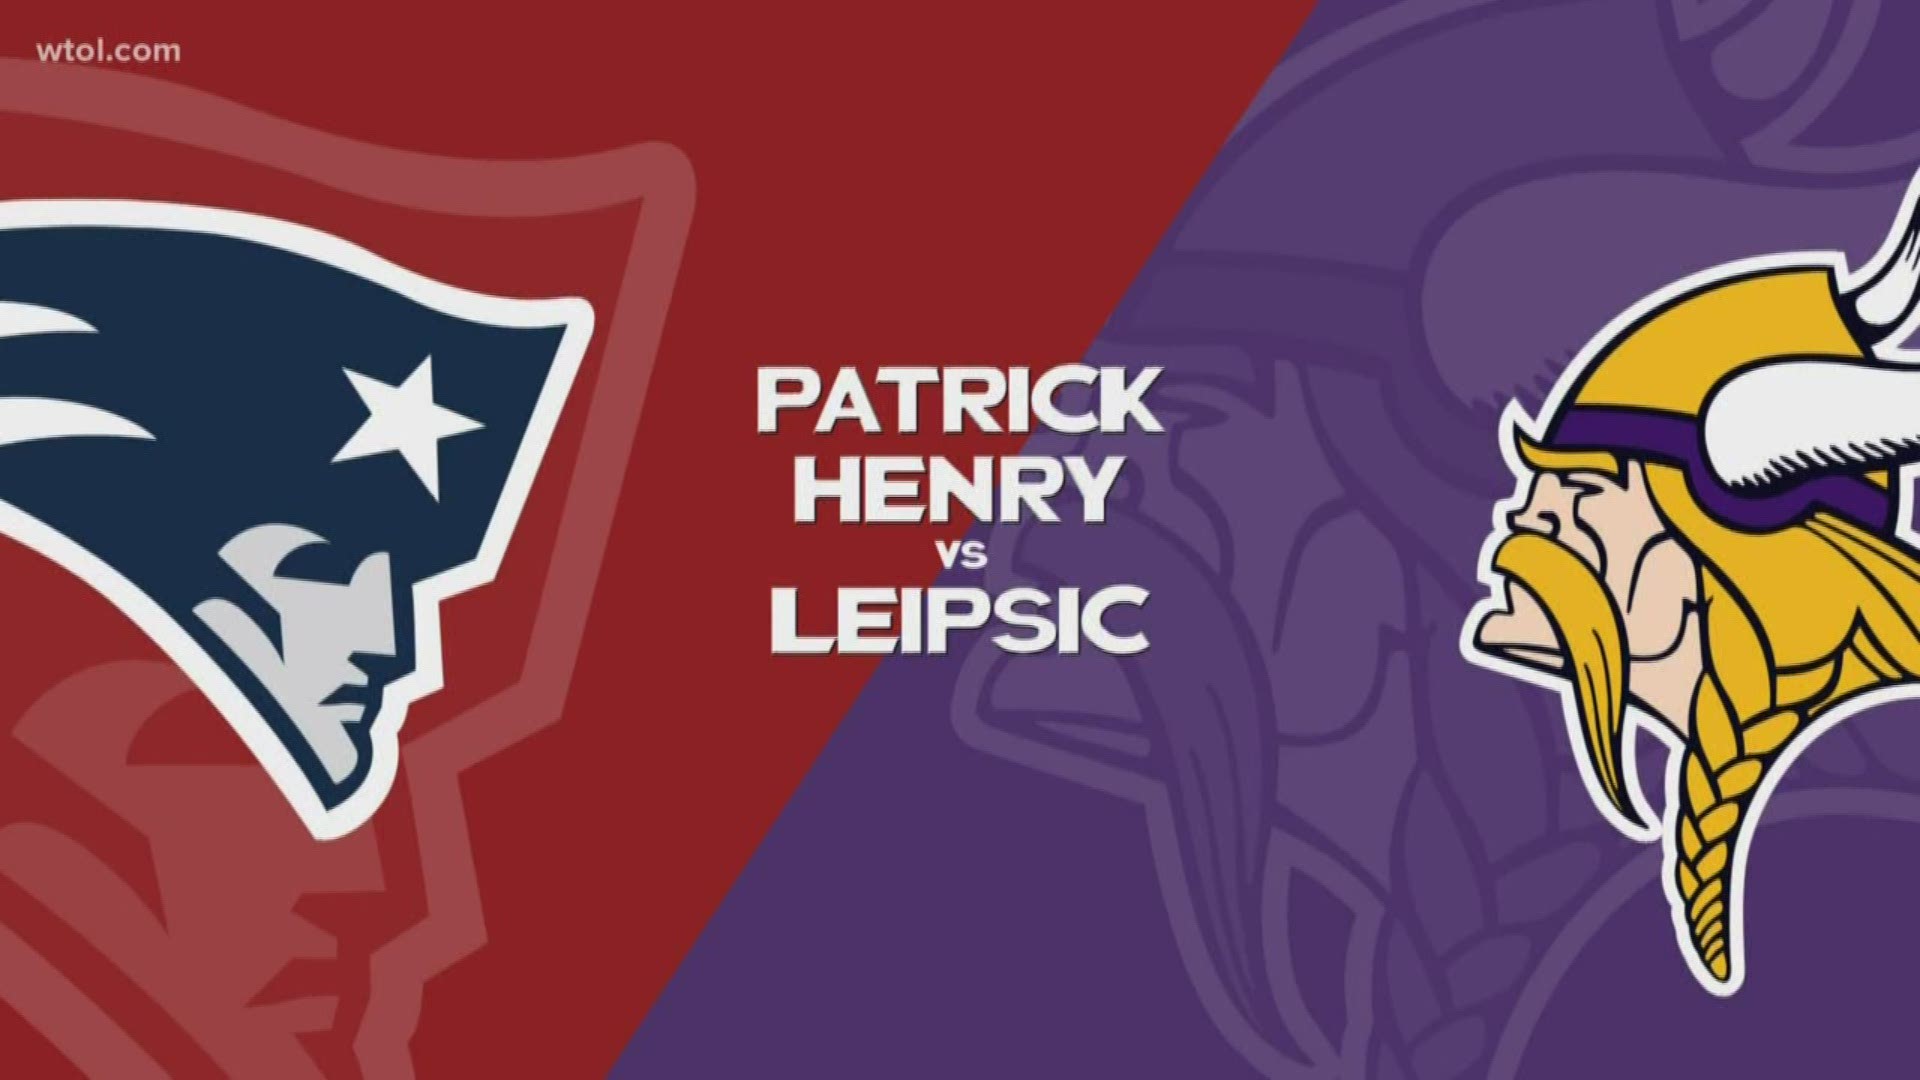 Patrick Henry wins 27-13.